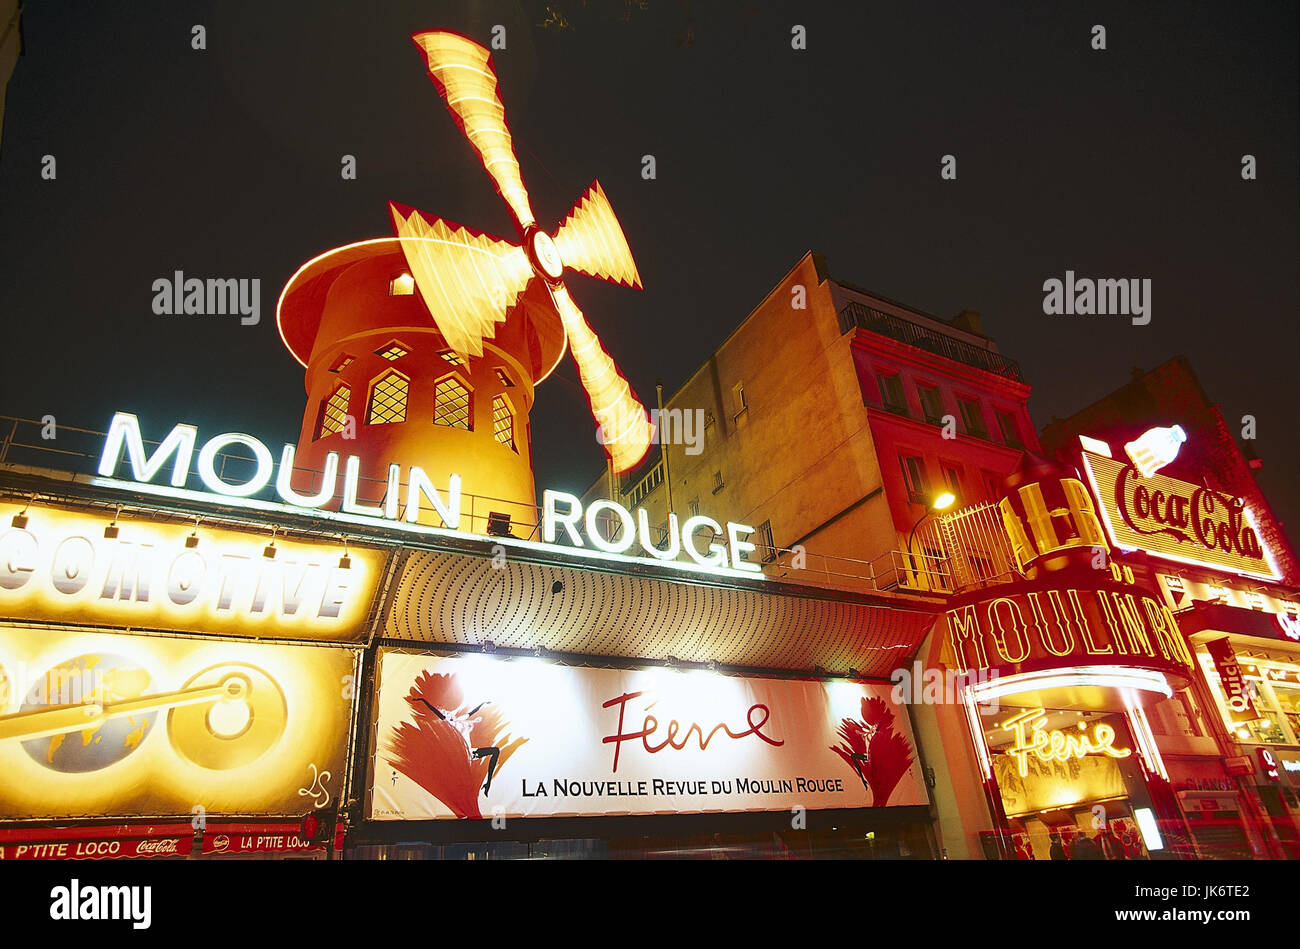 Frankreich, Paris, Moulin Rouge,  Revuetheater, Nacht  Hauptstadt, Vergnügungsviertel, Boulevard de Clichy, Place Blanche, Place Pigalle, Nachtlokal, Etablissement, Sehenswürdigkeit, Abend Stock Photo